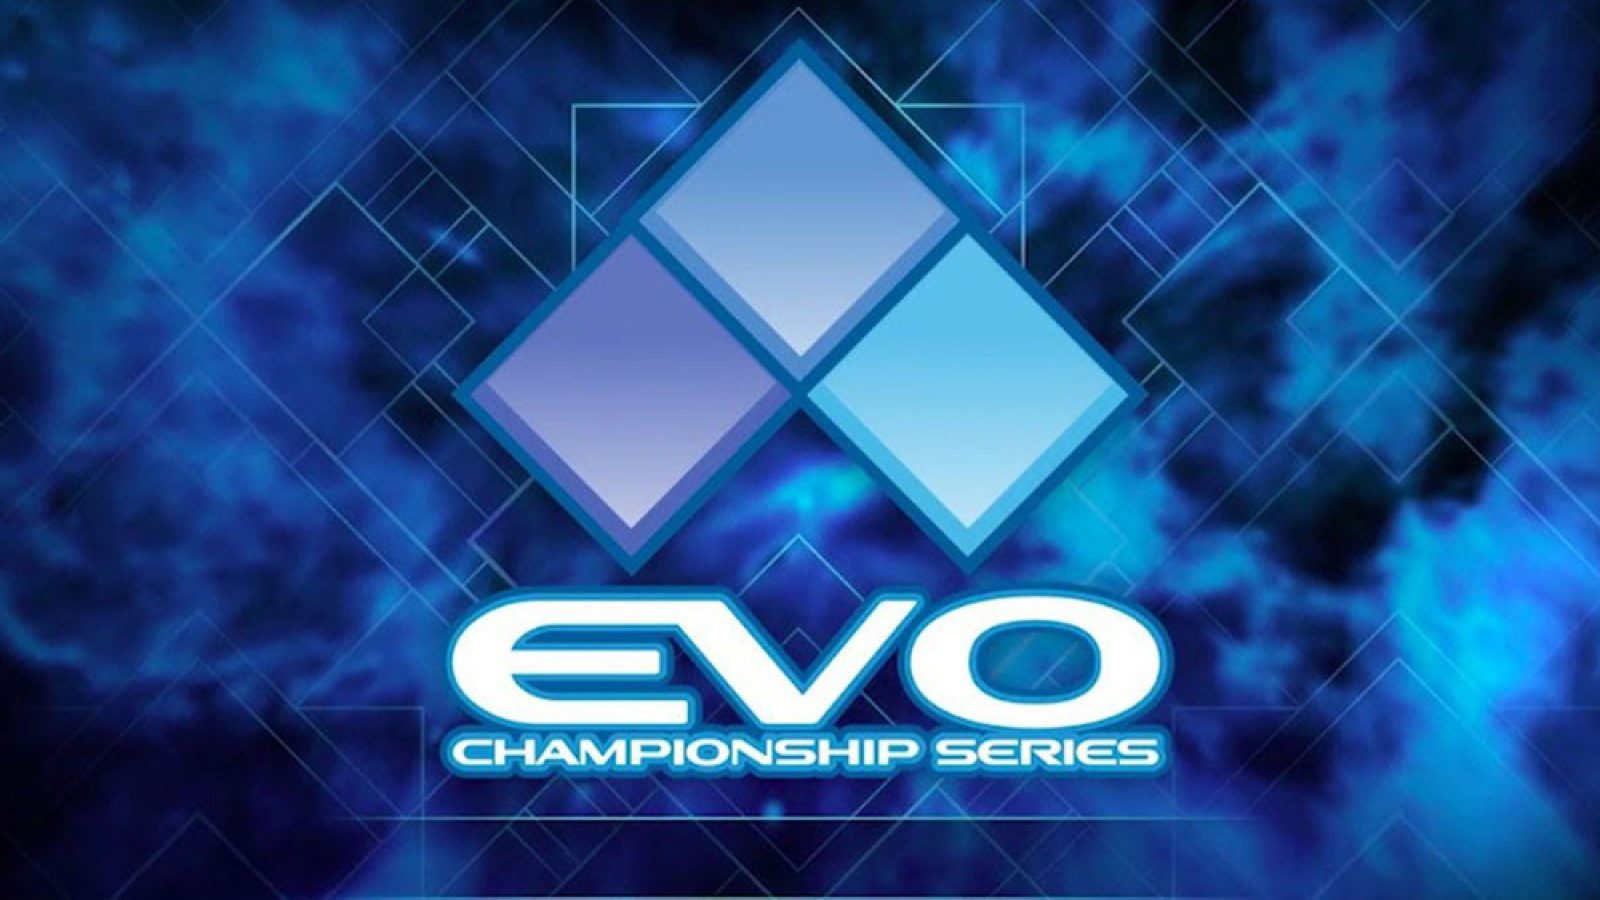 Sony adquire marca Evo, confirma Evo 2021 Online e lista completa de jogos  | Dot Esports Brasil